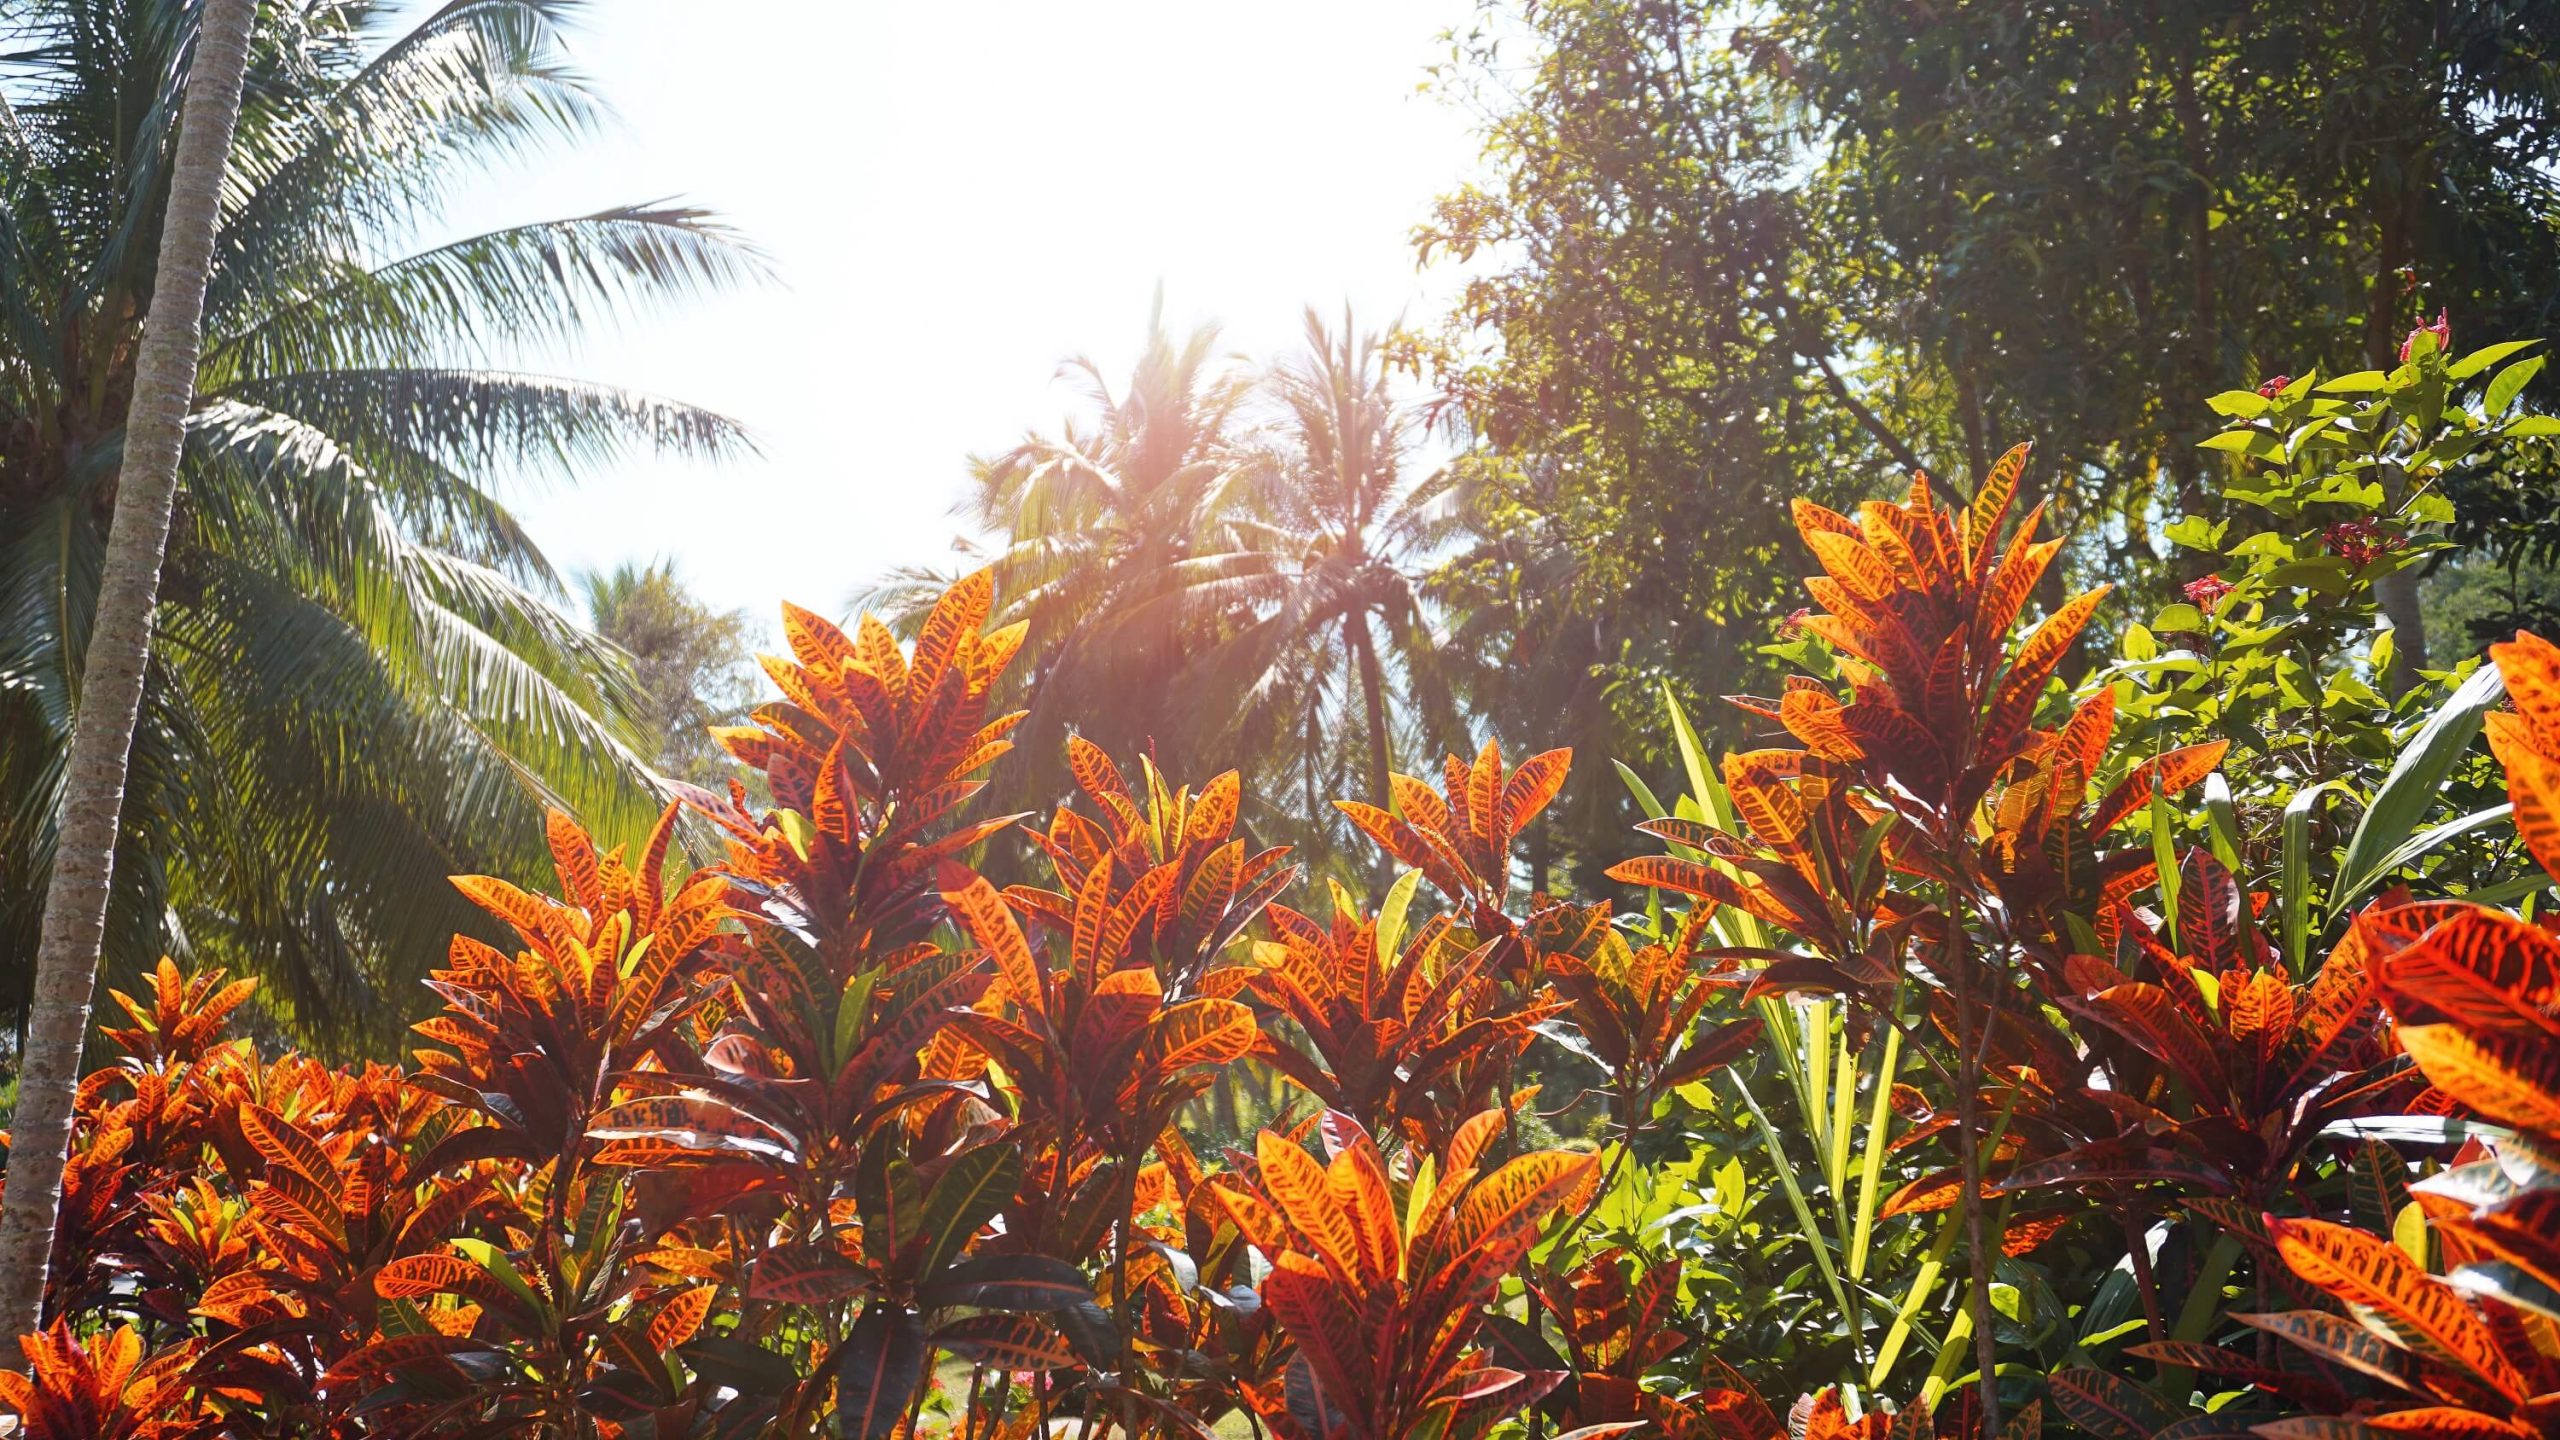 A photo of sun-resistant plants